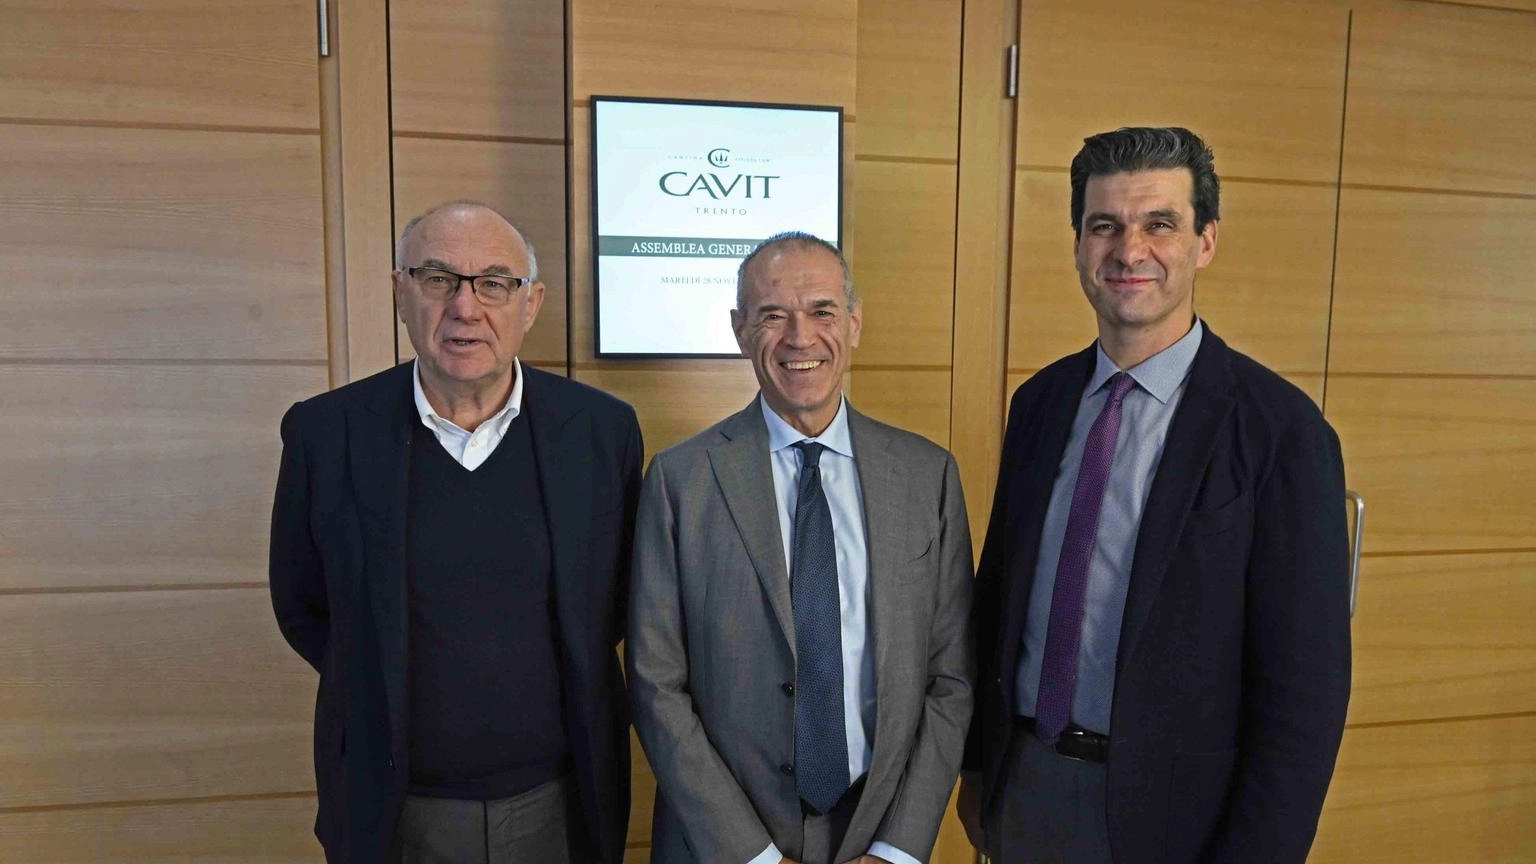 Gruppo Cavit chiude bilancio con fatturato a 267,1 milioni